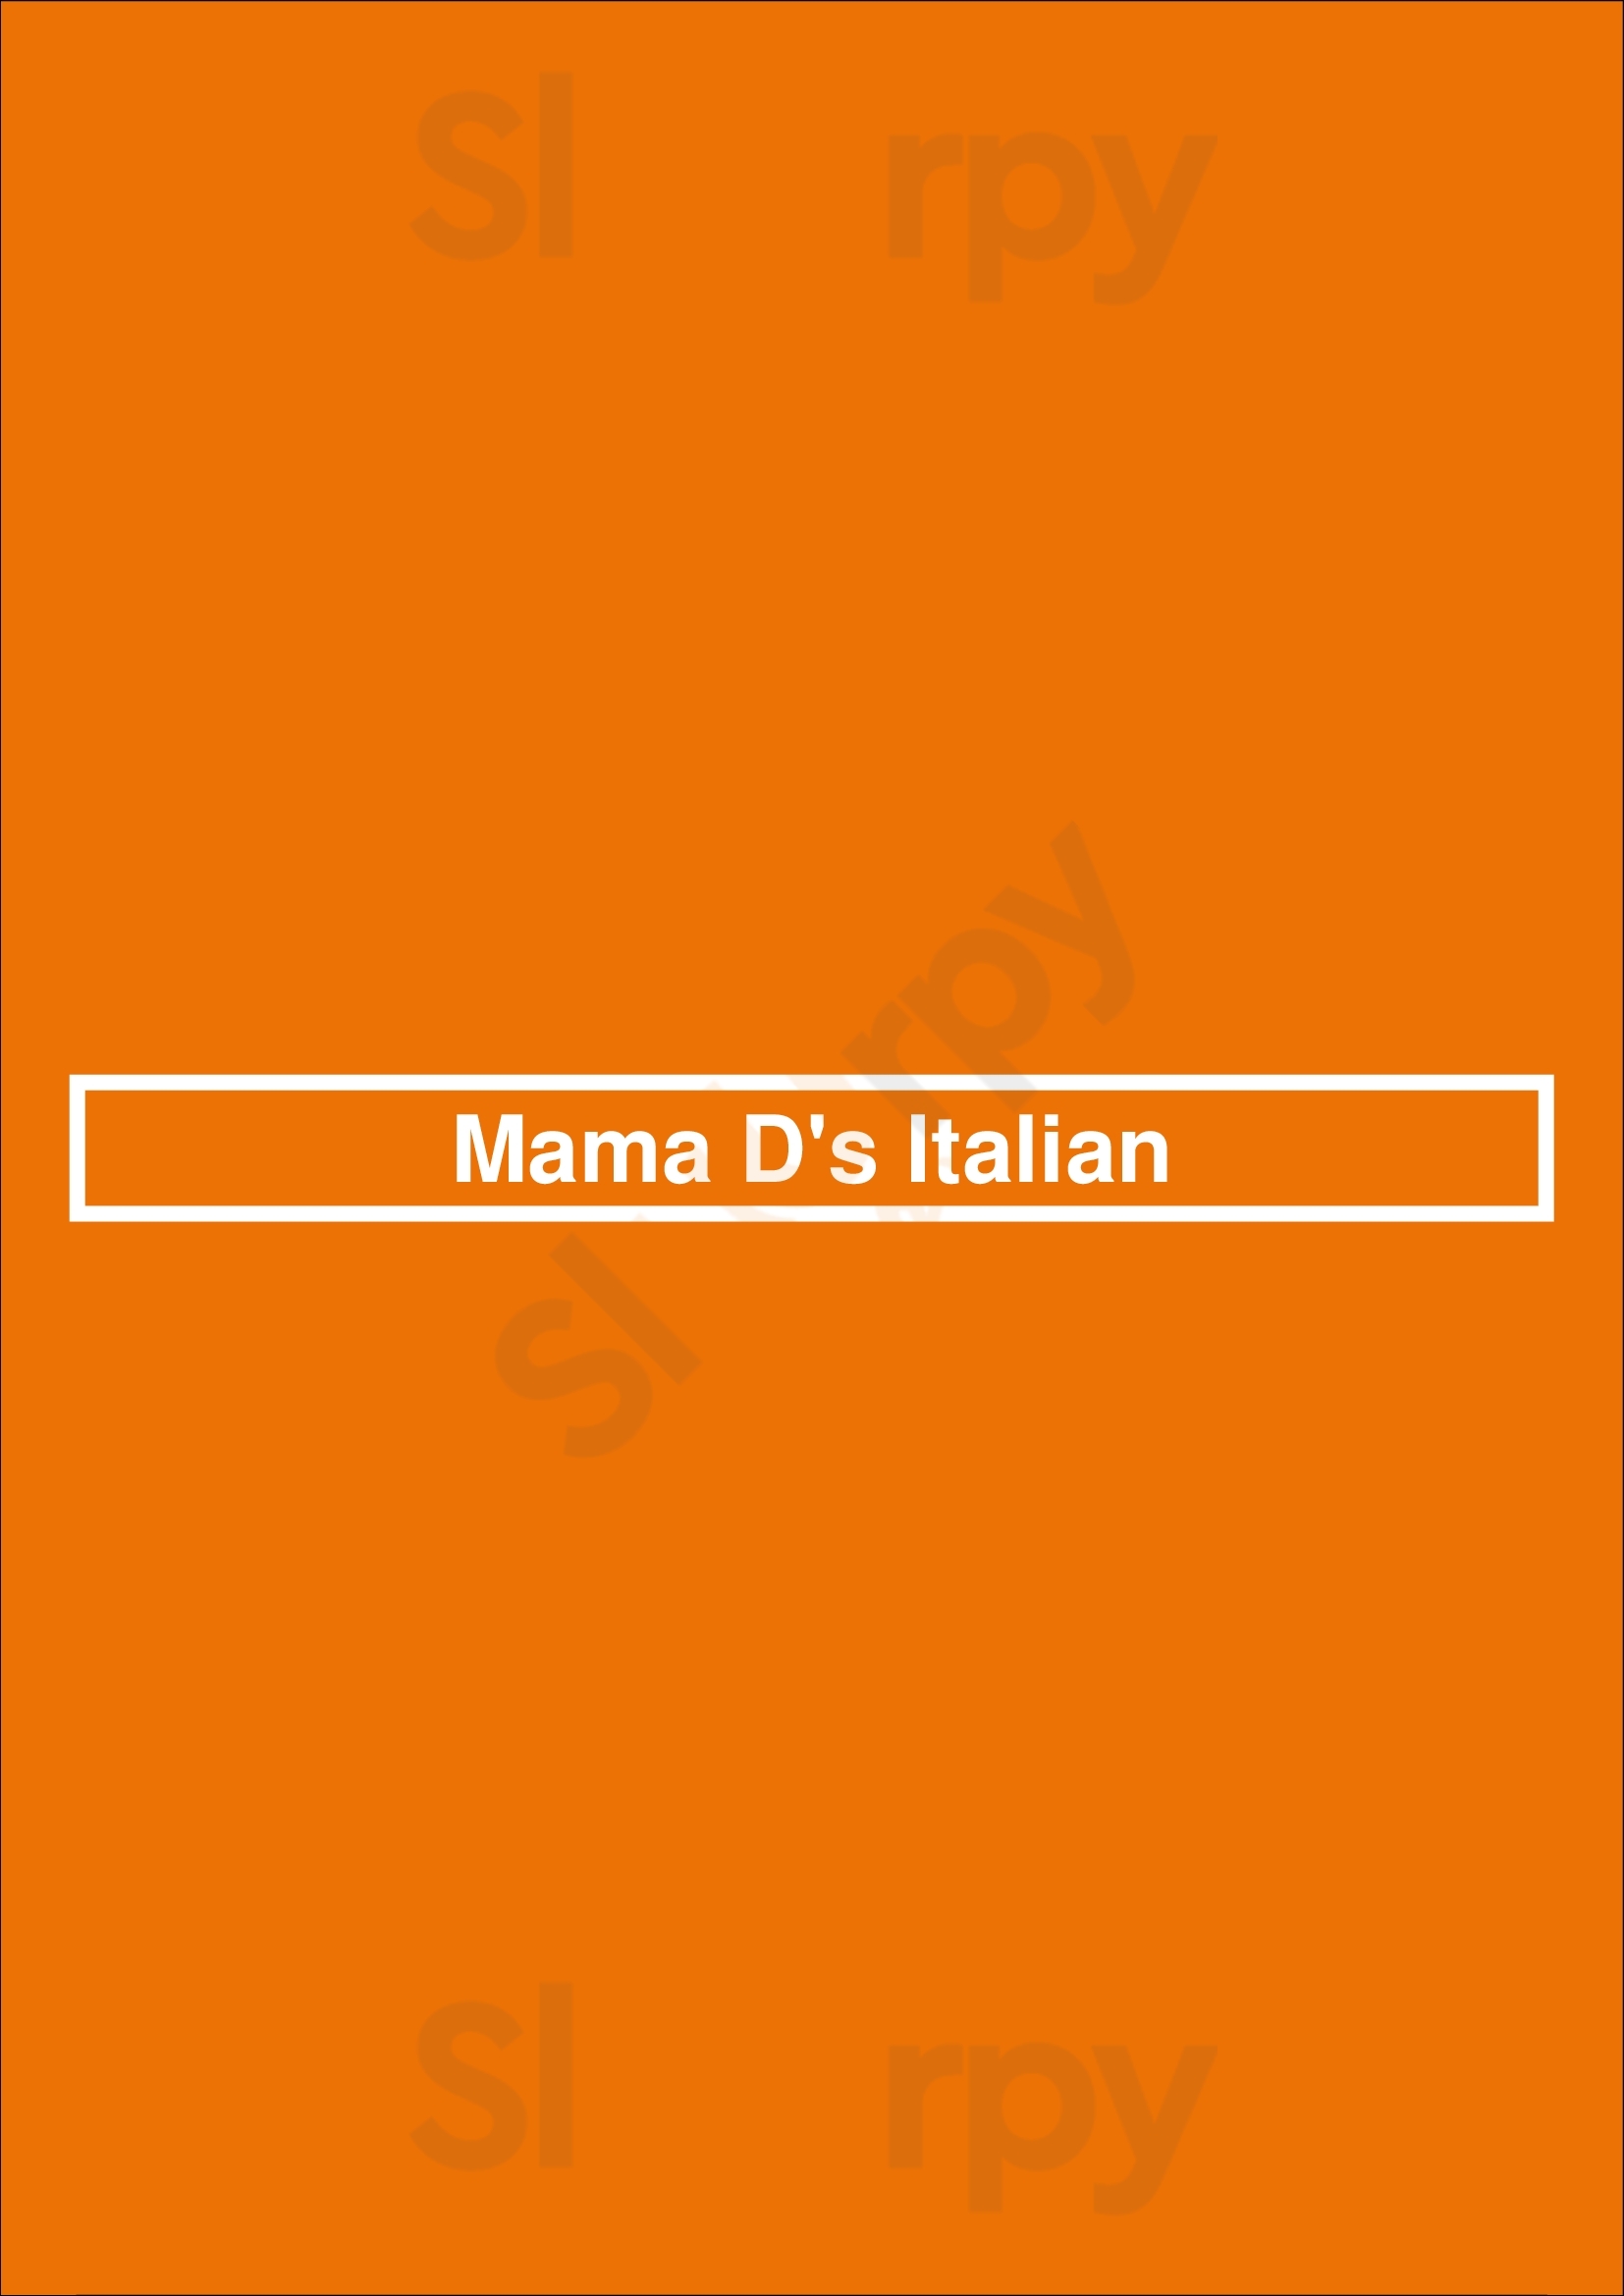 Mama D's Italian Newport Beach Menu - 1